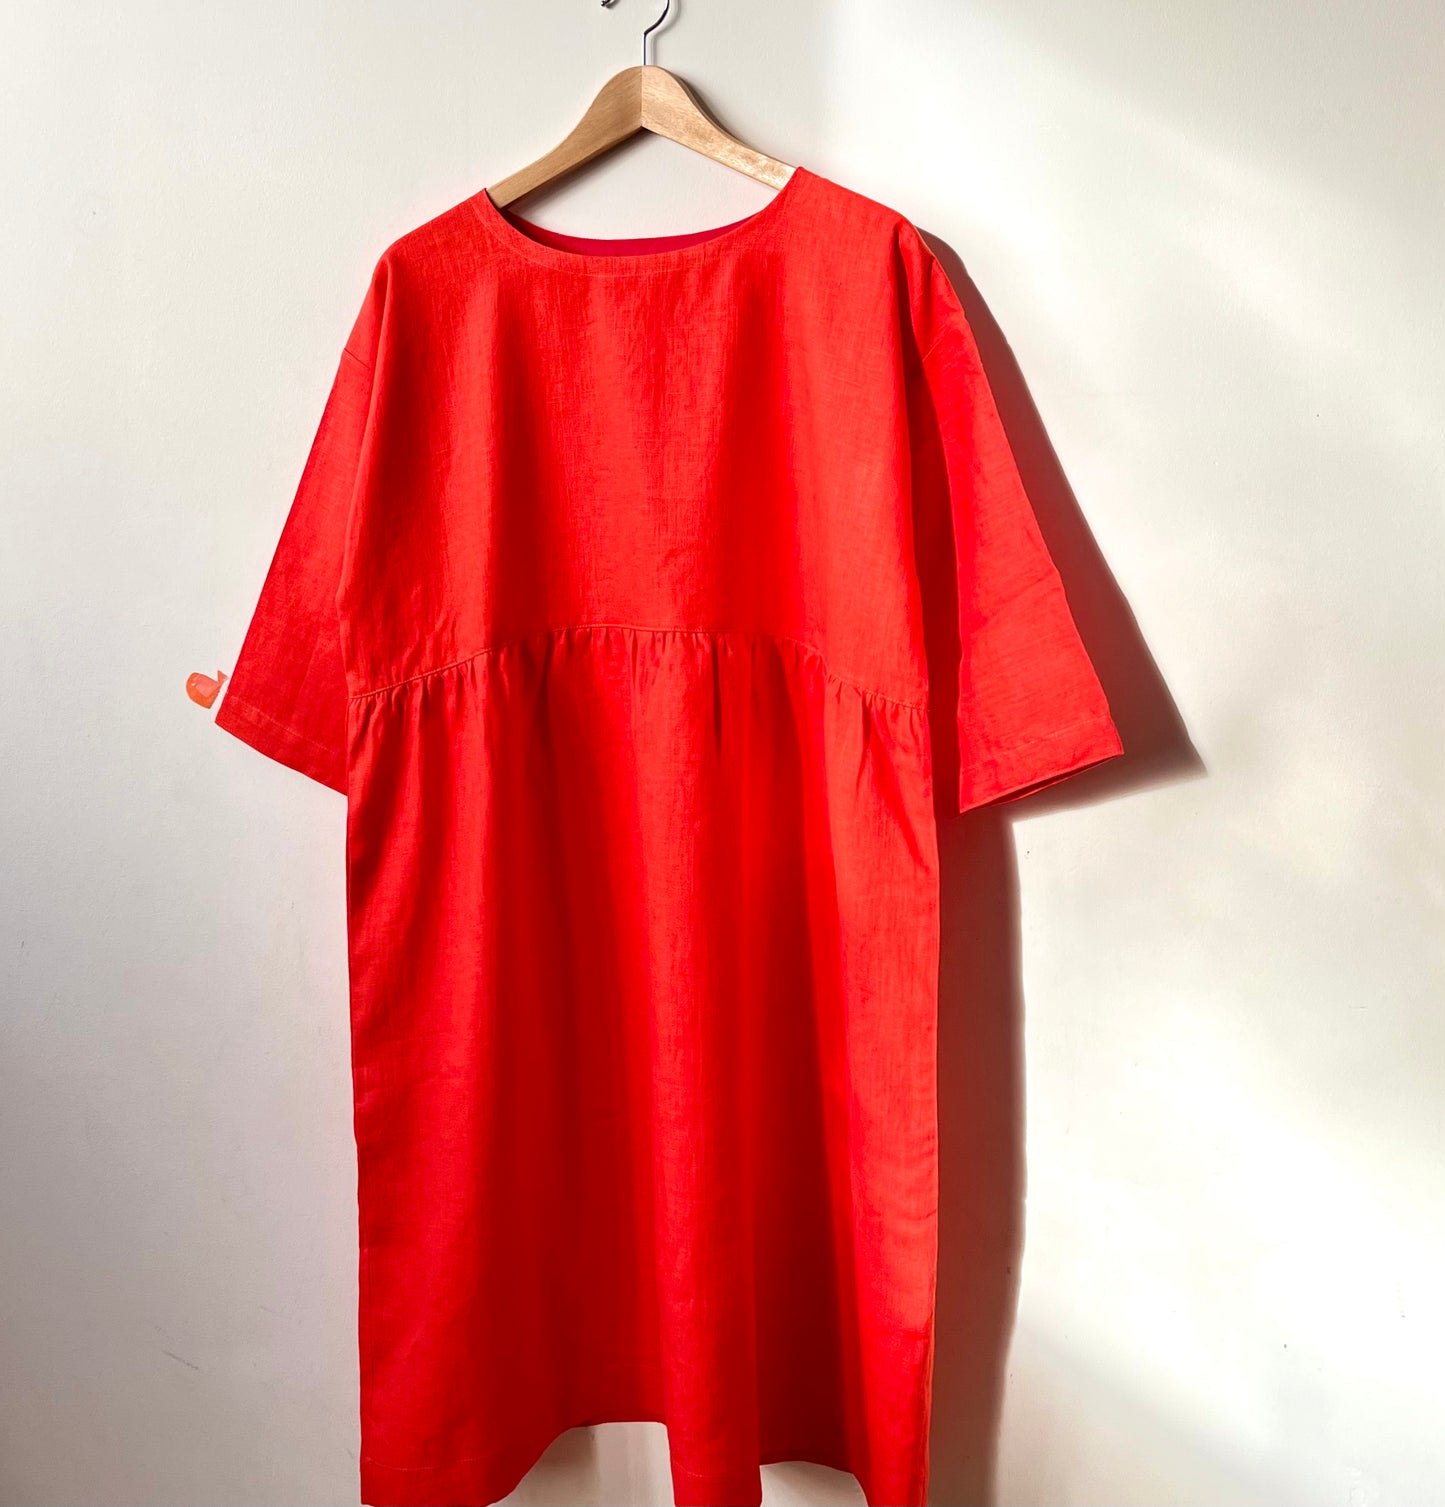 Vibrant orange red linen dress